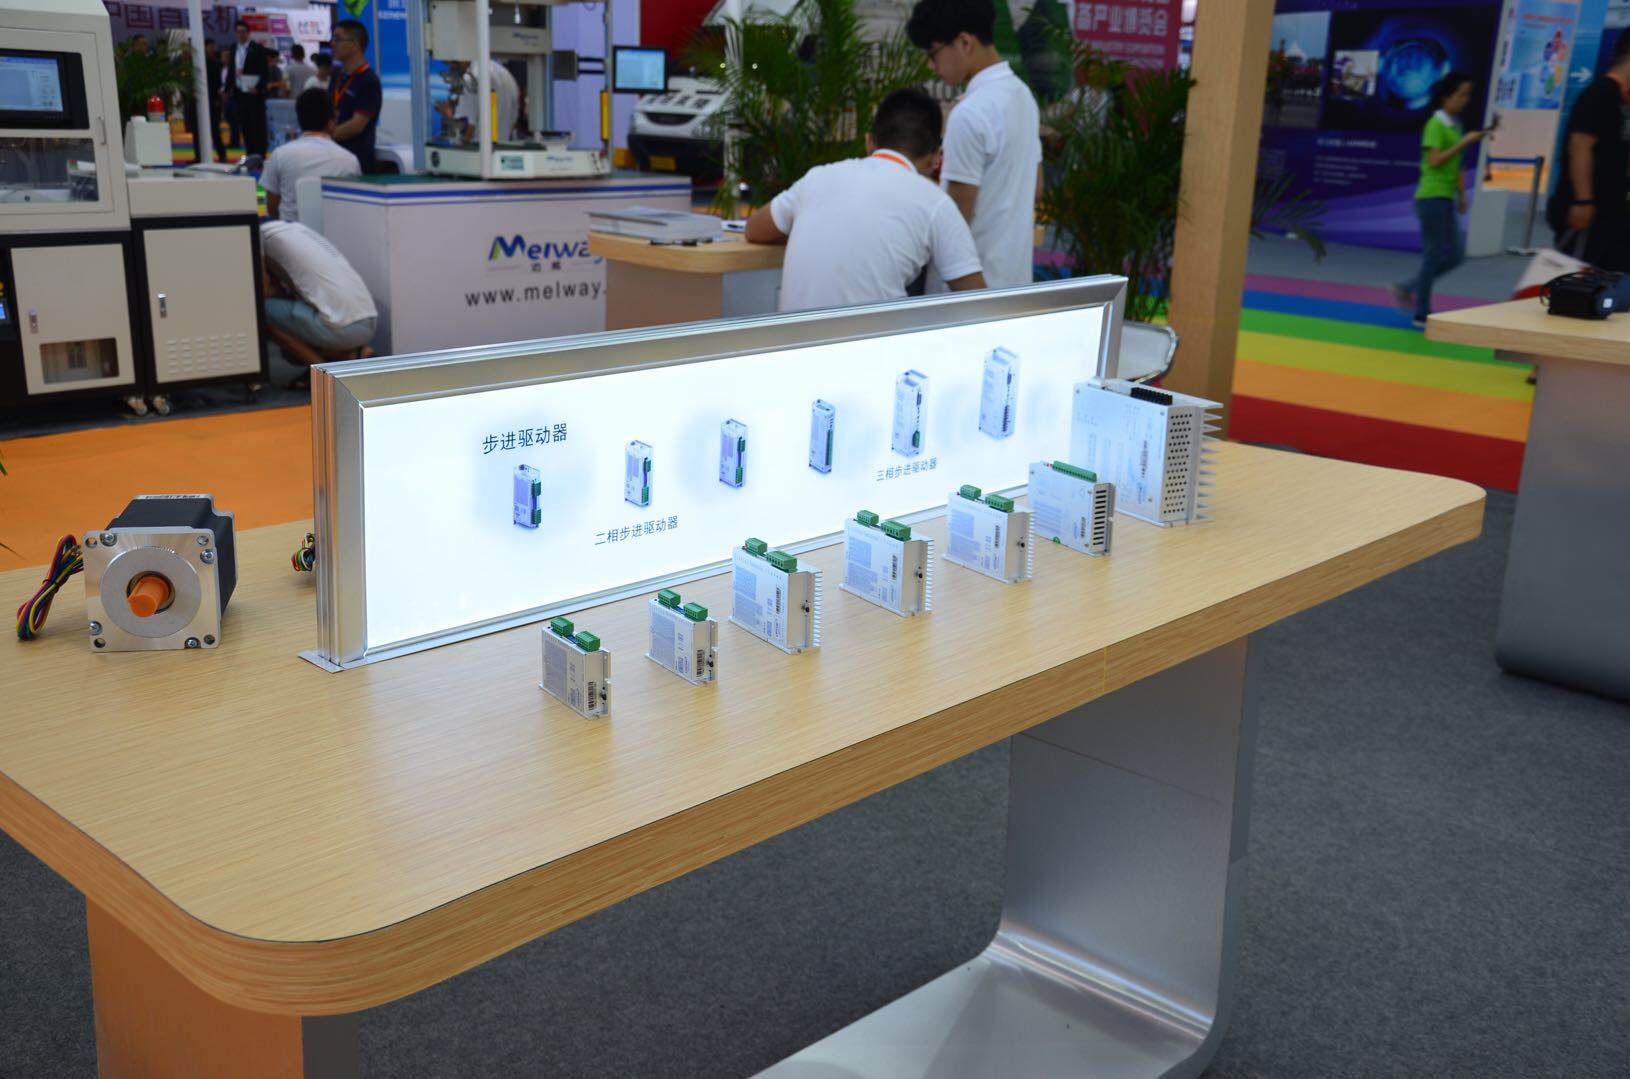 2016年第五届深圳电子装备产业博览会——英士达机电惊艳亮相